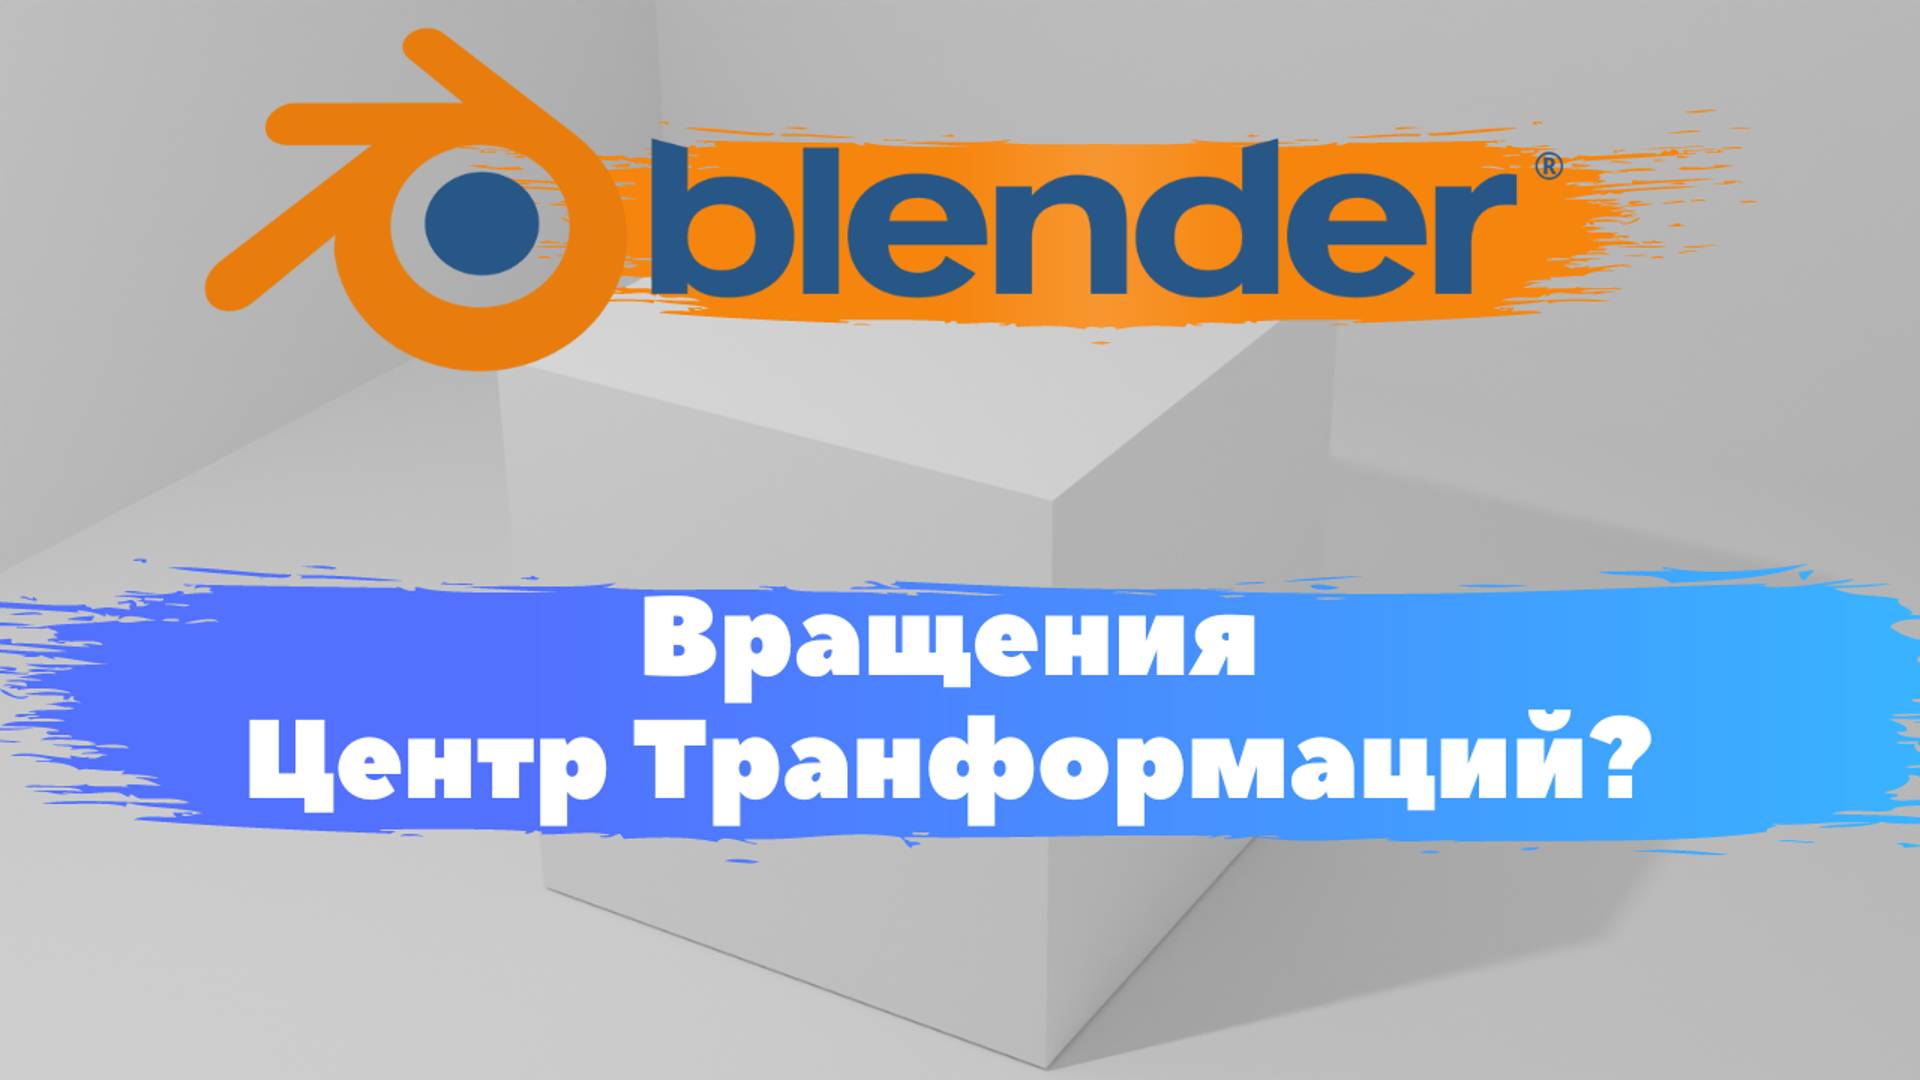 Всё о вращений объекта "ЦентрТранформаций" в программе Blender 3D! Как переместить в направлений?